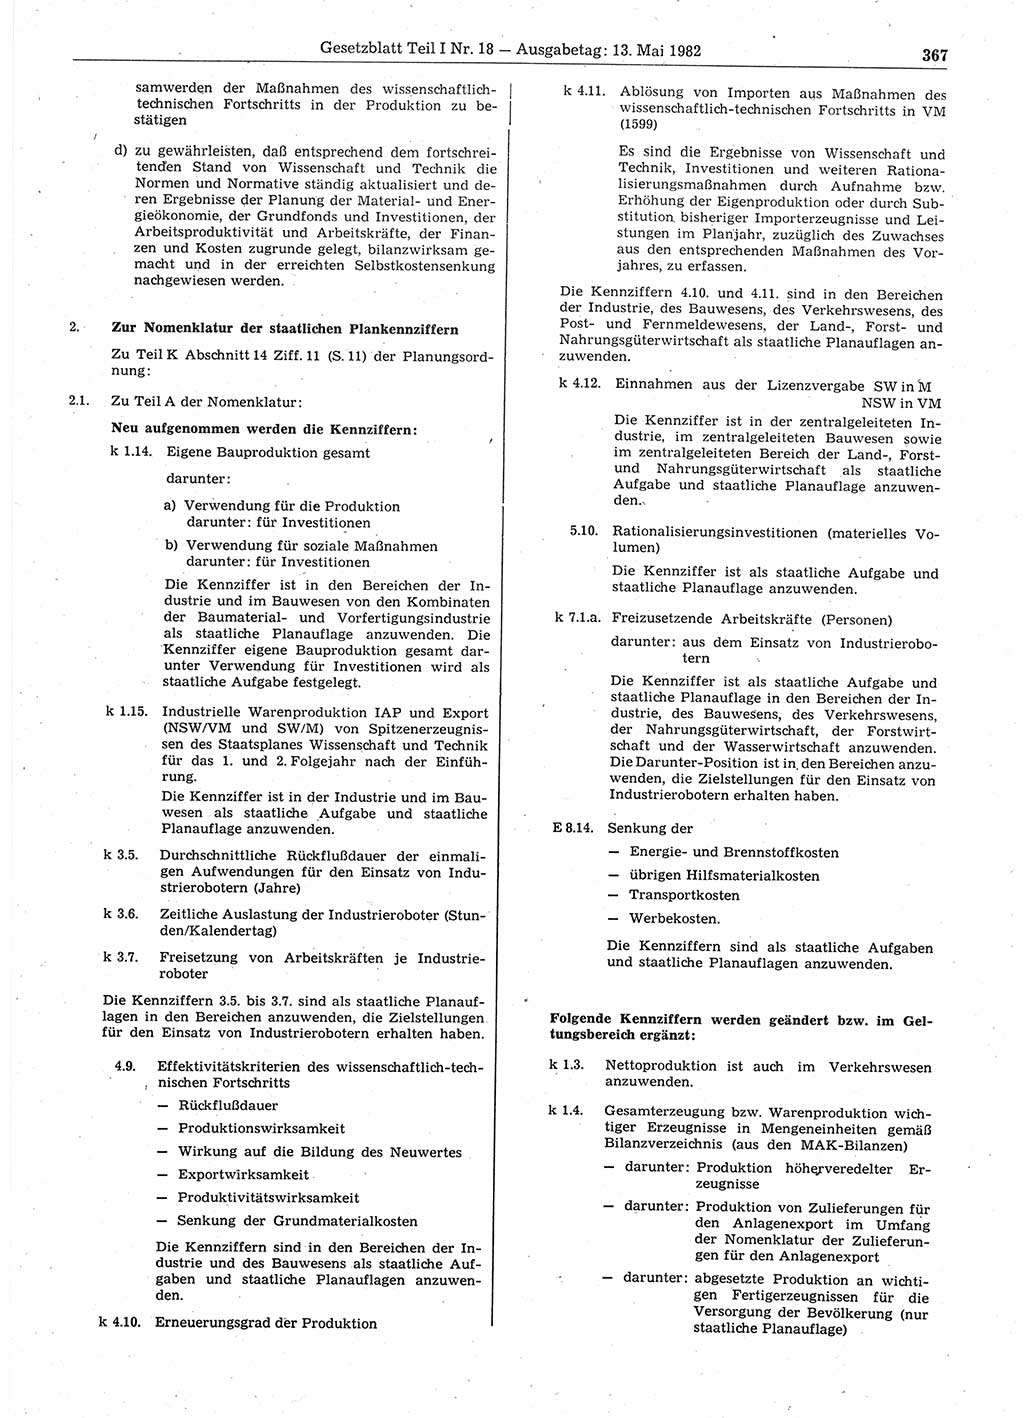 Gesetzblatt (GBl.) der Deutschen Demokratischen Republik (DDR) Teil Ⅰ 1982, Seite 367 (GBl. DDR Ⅰ 1982, S. 367)